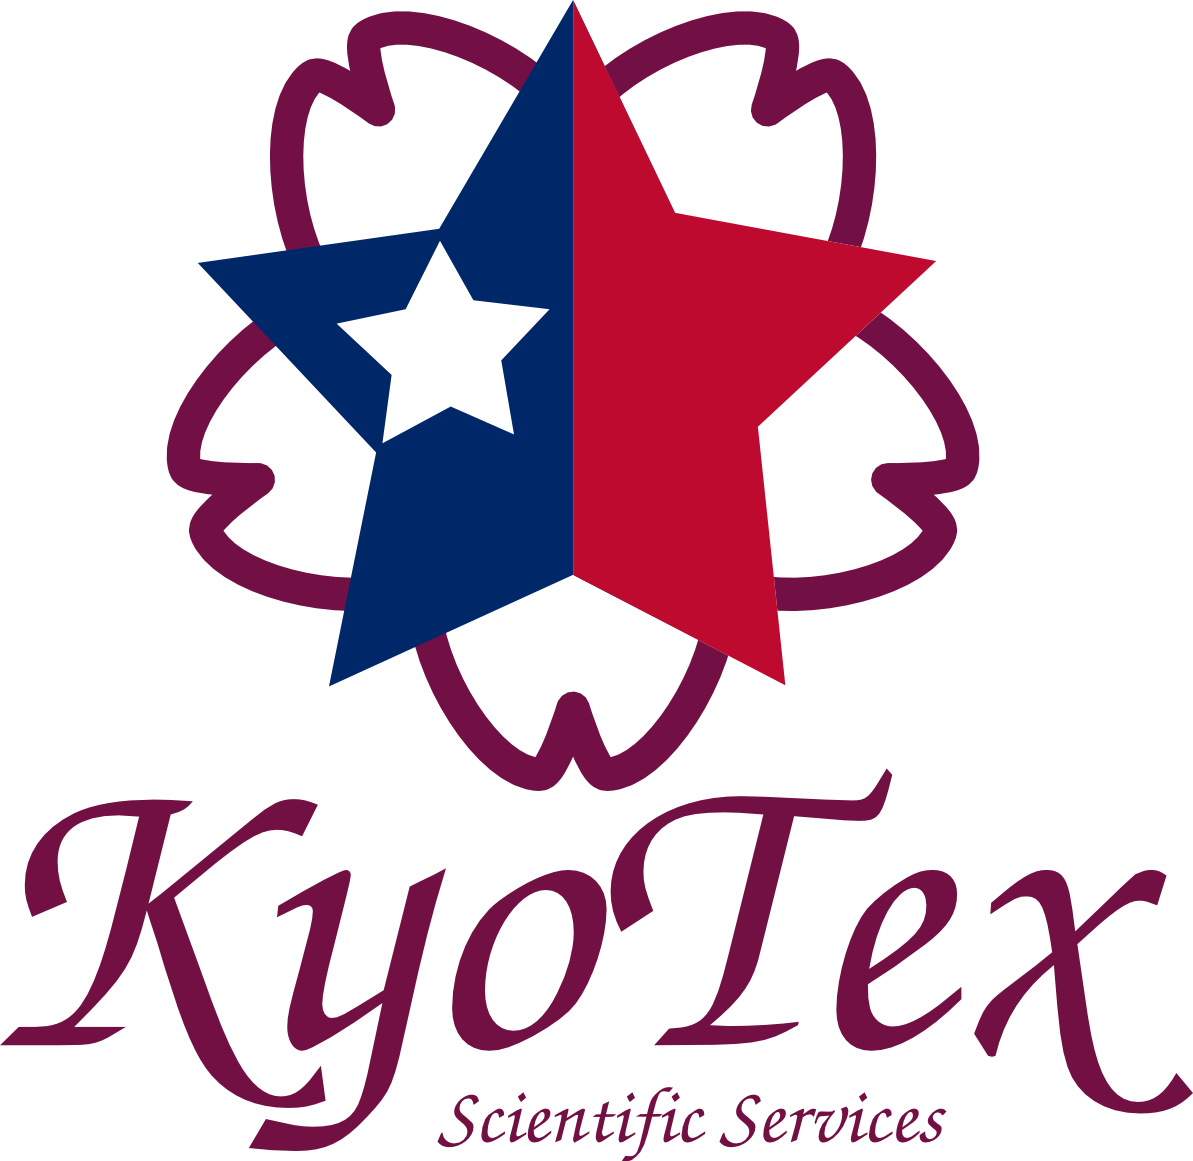 KyoTex Co. Ltd.